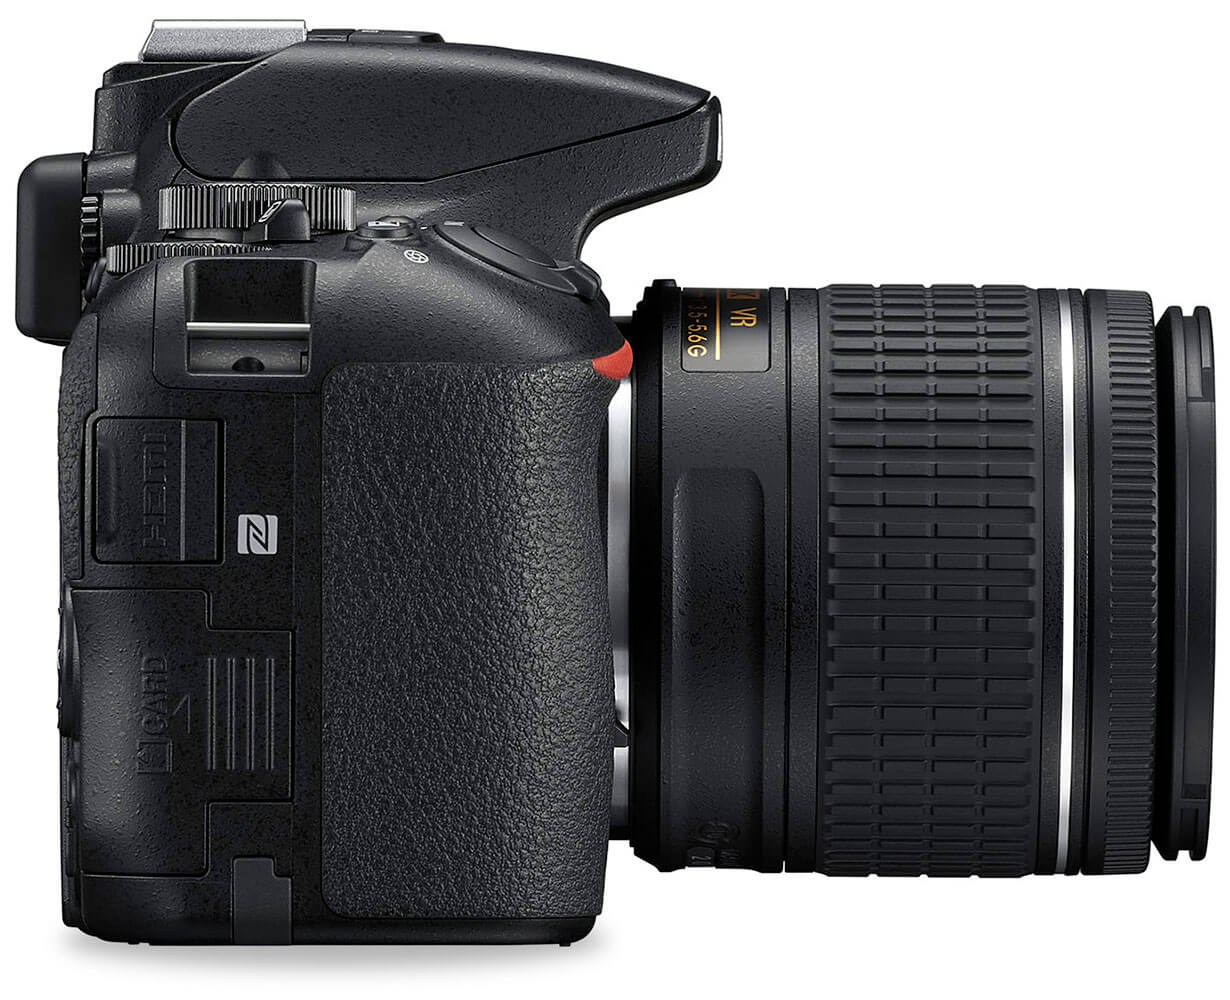 Vue de côté d’un reflex numérique Nikon avec des points clés indiquant différentes fonctionnalités.